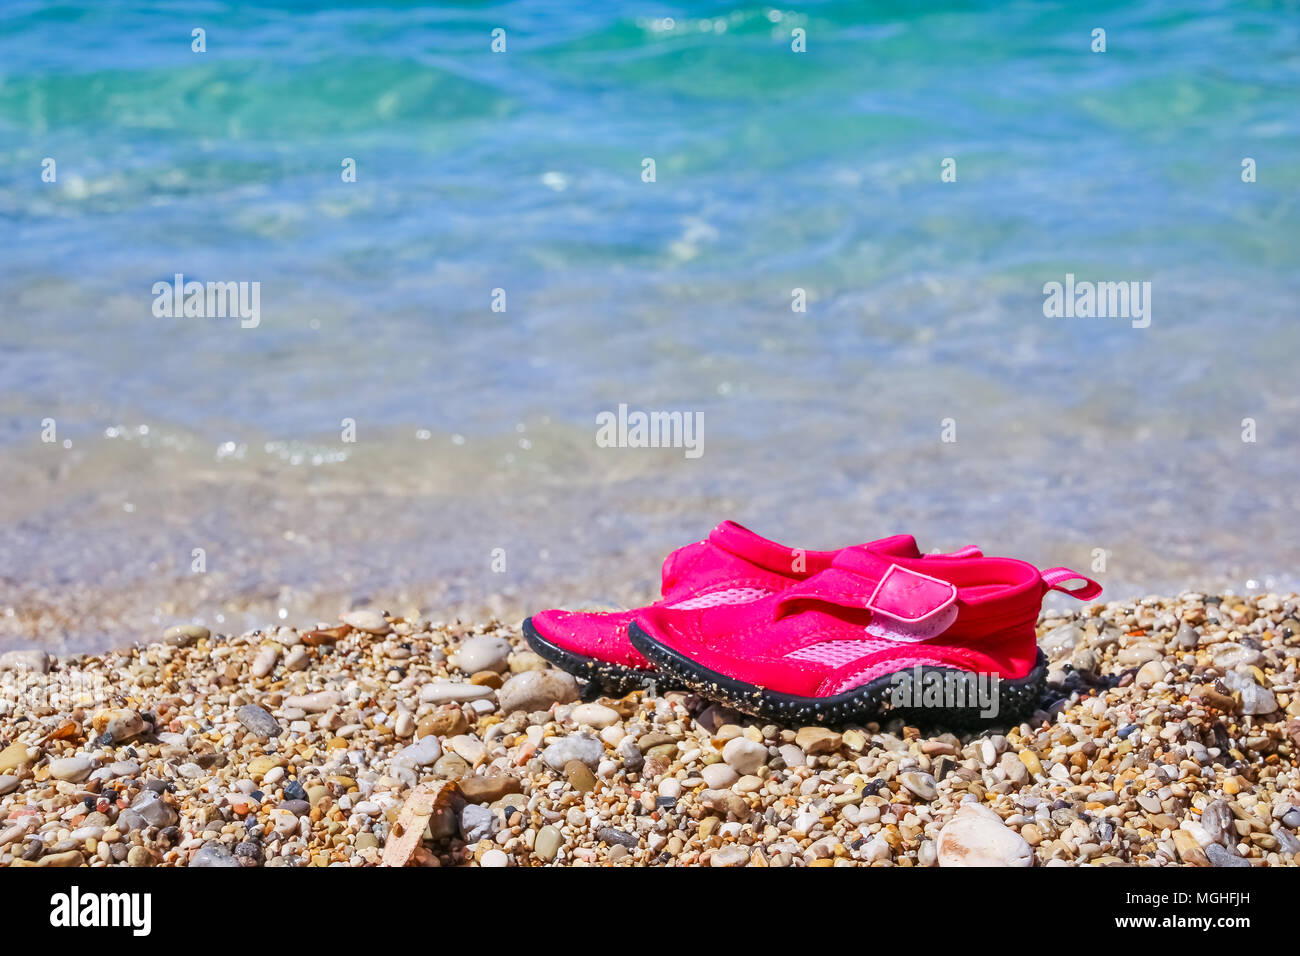 Paar rosa Badeschuhe auf Marmor Kiesel Strand am türkisblauen Meer Wasser.  Sommerurlaub Konzept. Kinder Schuhe für Strand. Schwimmen Neopren Schuhe.  Wasser Schuhe, felsigen Strand Stockfotografie - Alamy